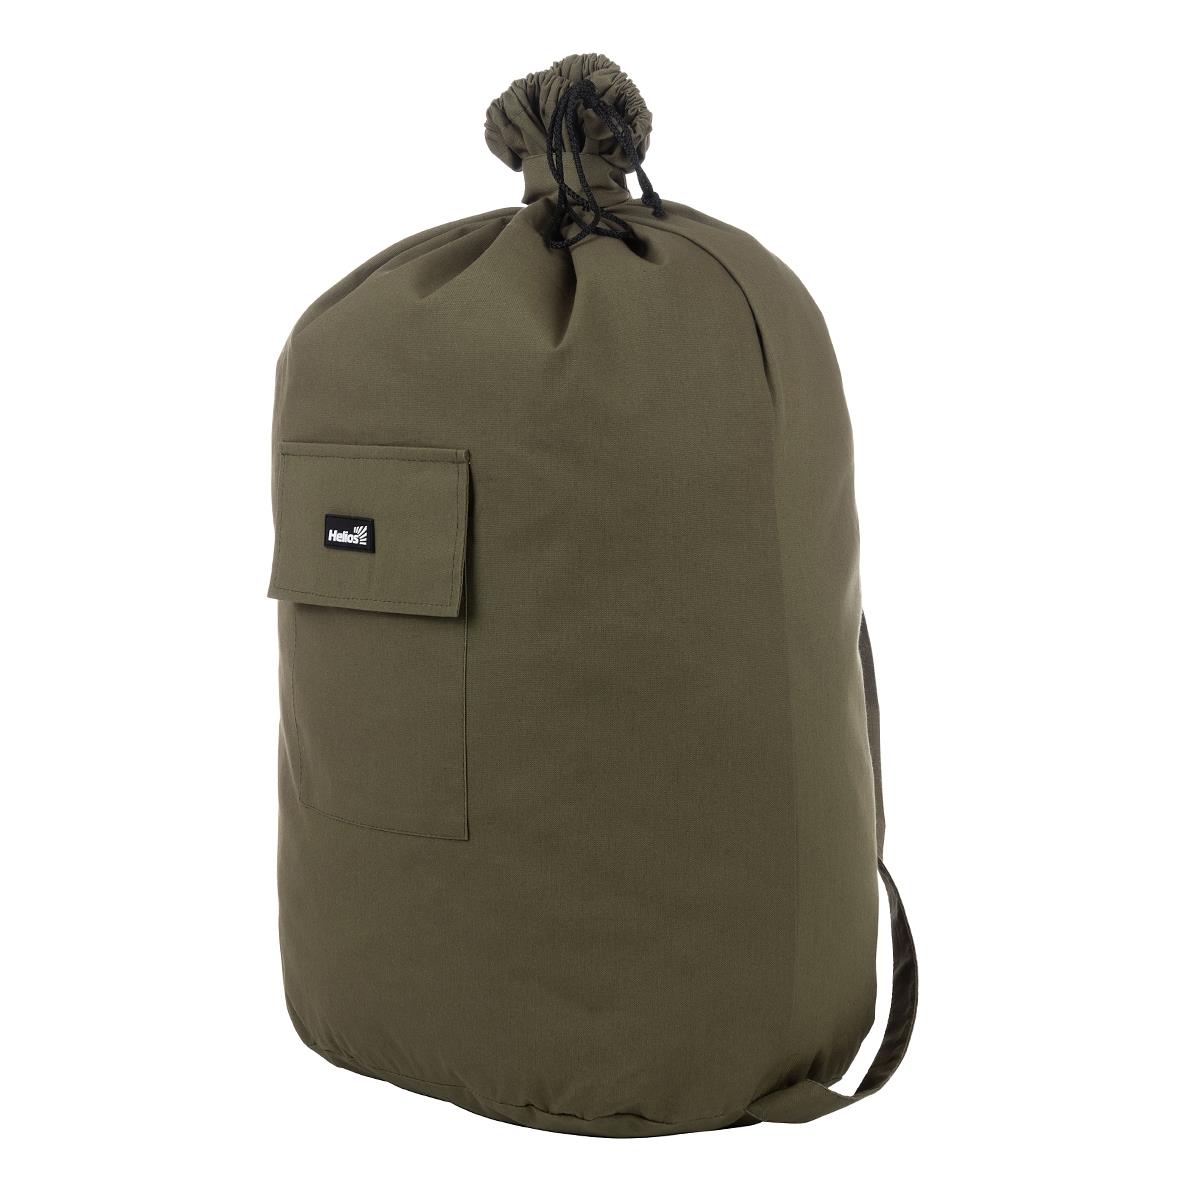 Мешок вещевой солдатский средний, 70л (палаточная ткань) Helios сумка мешок 2 отдела на молниях 3 наружных кармана длинный ремень коричневый